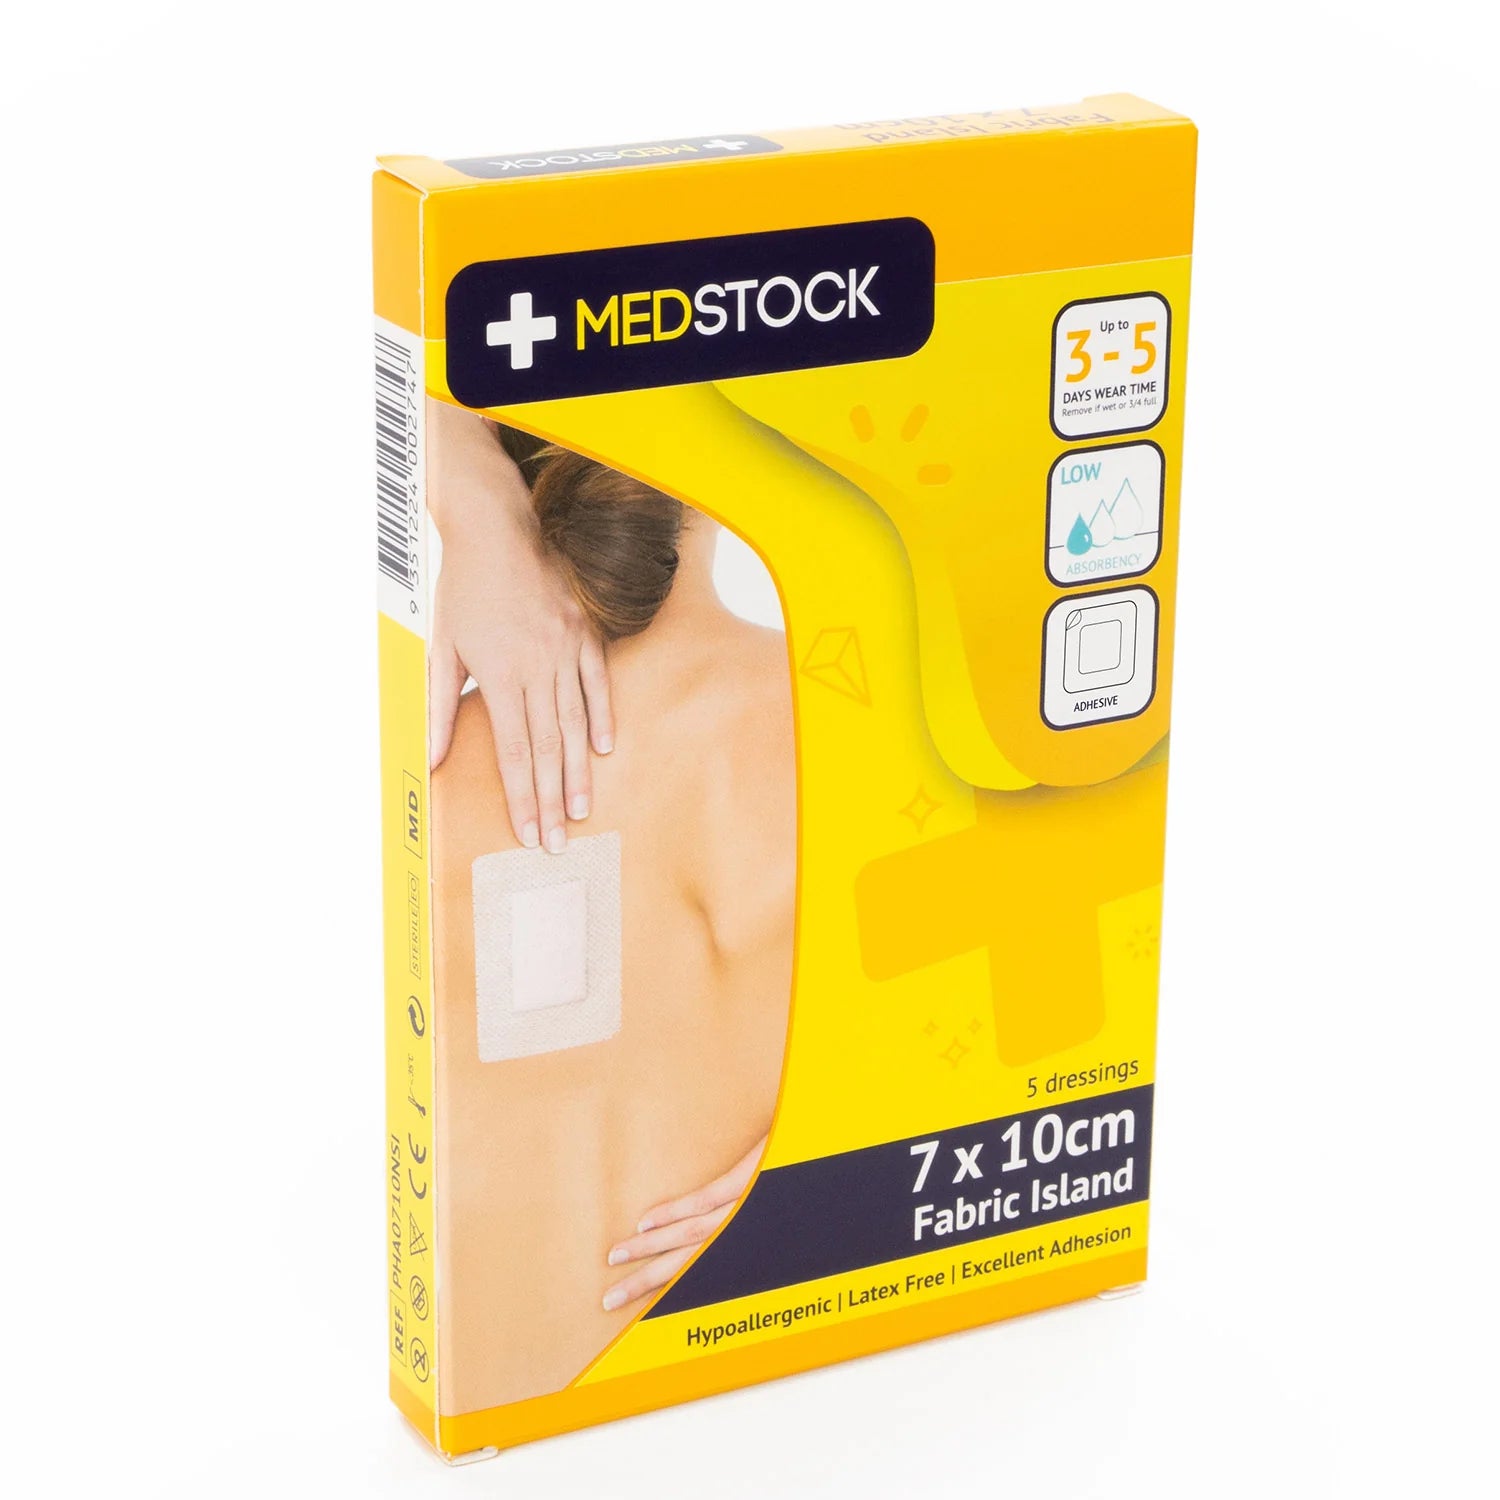 Medstock Multipack Fabric Island Dressing -Box of 5